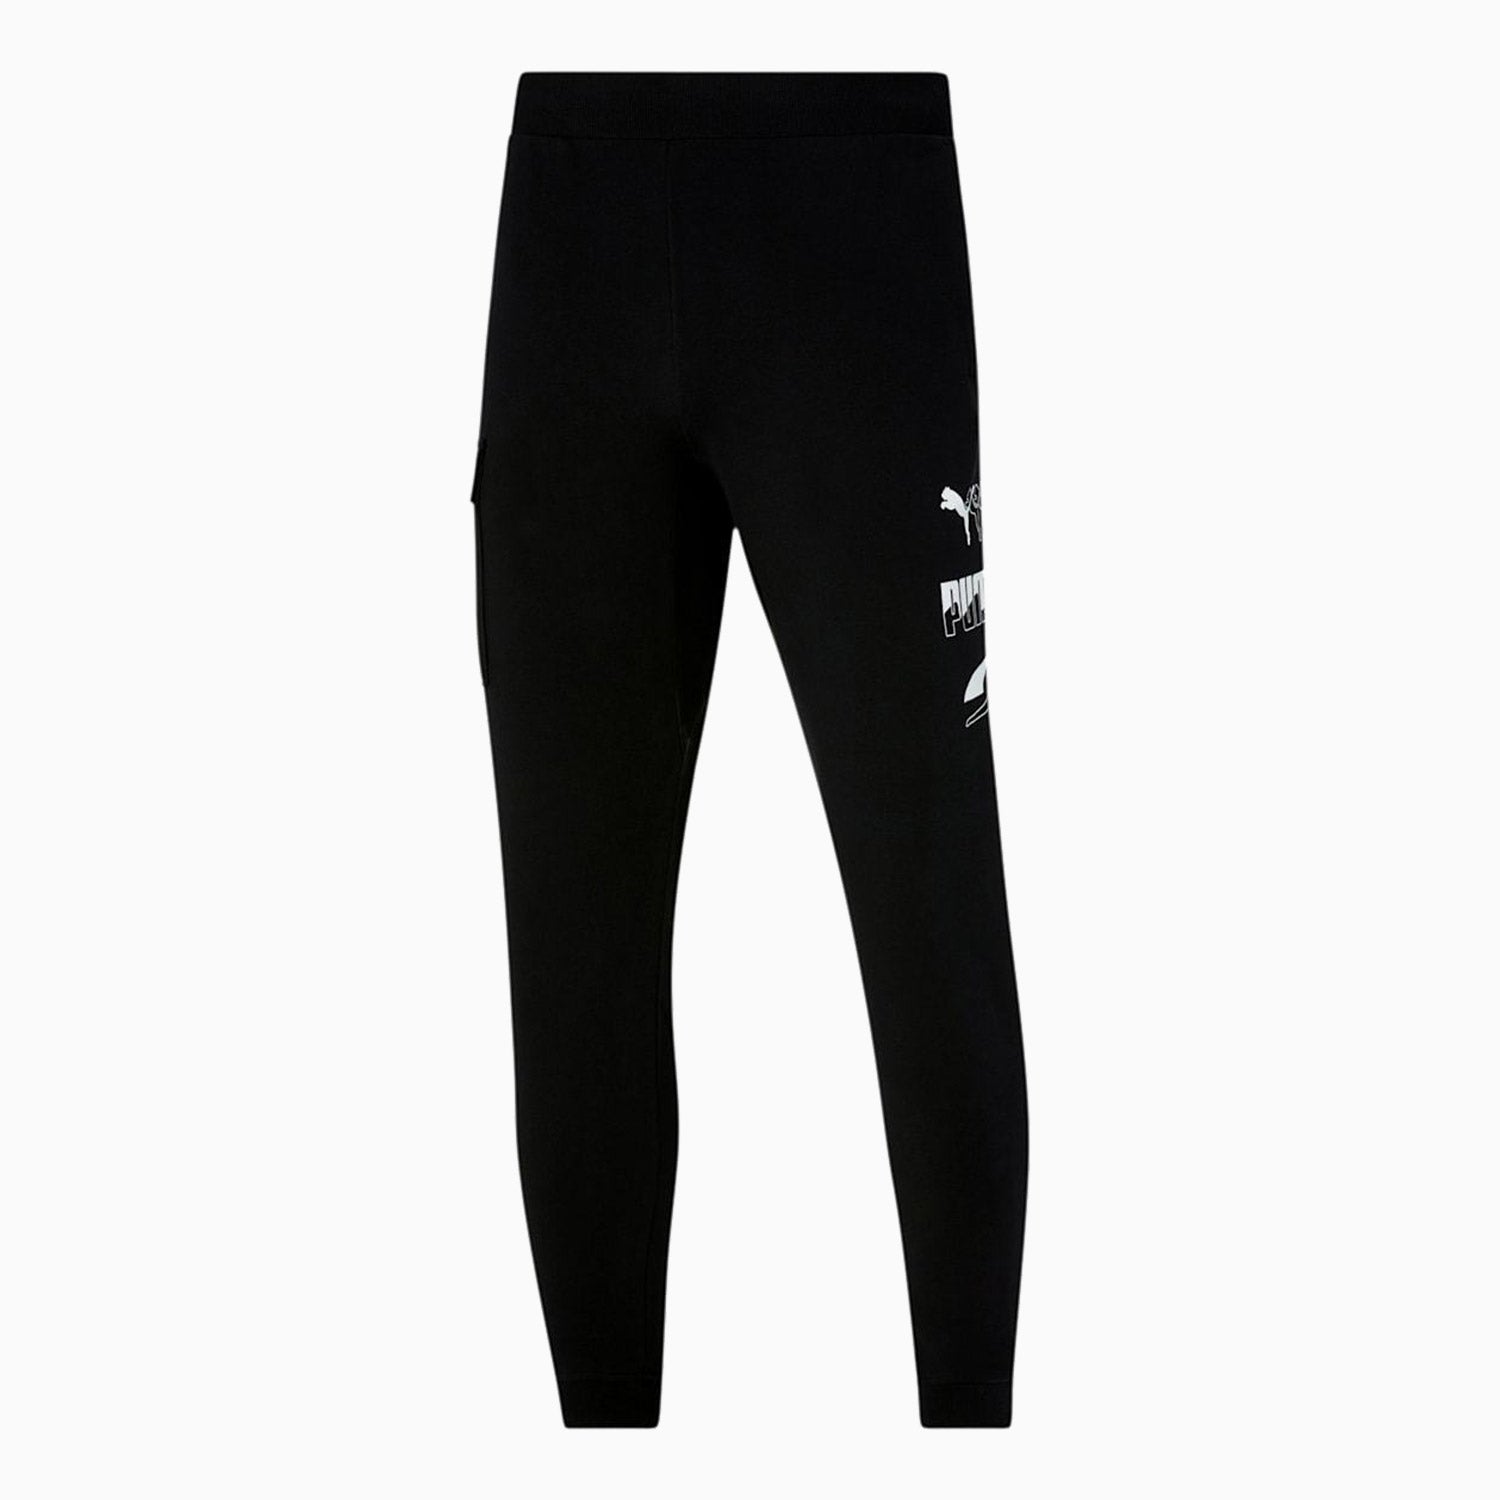 Puma Men's Rebels Pants - Color: Black - Tops and Bottoms USA -